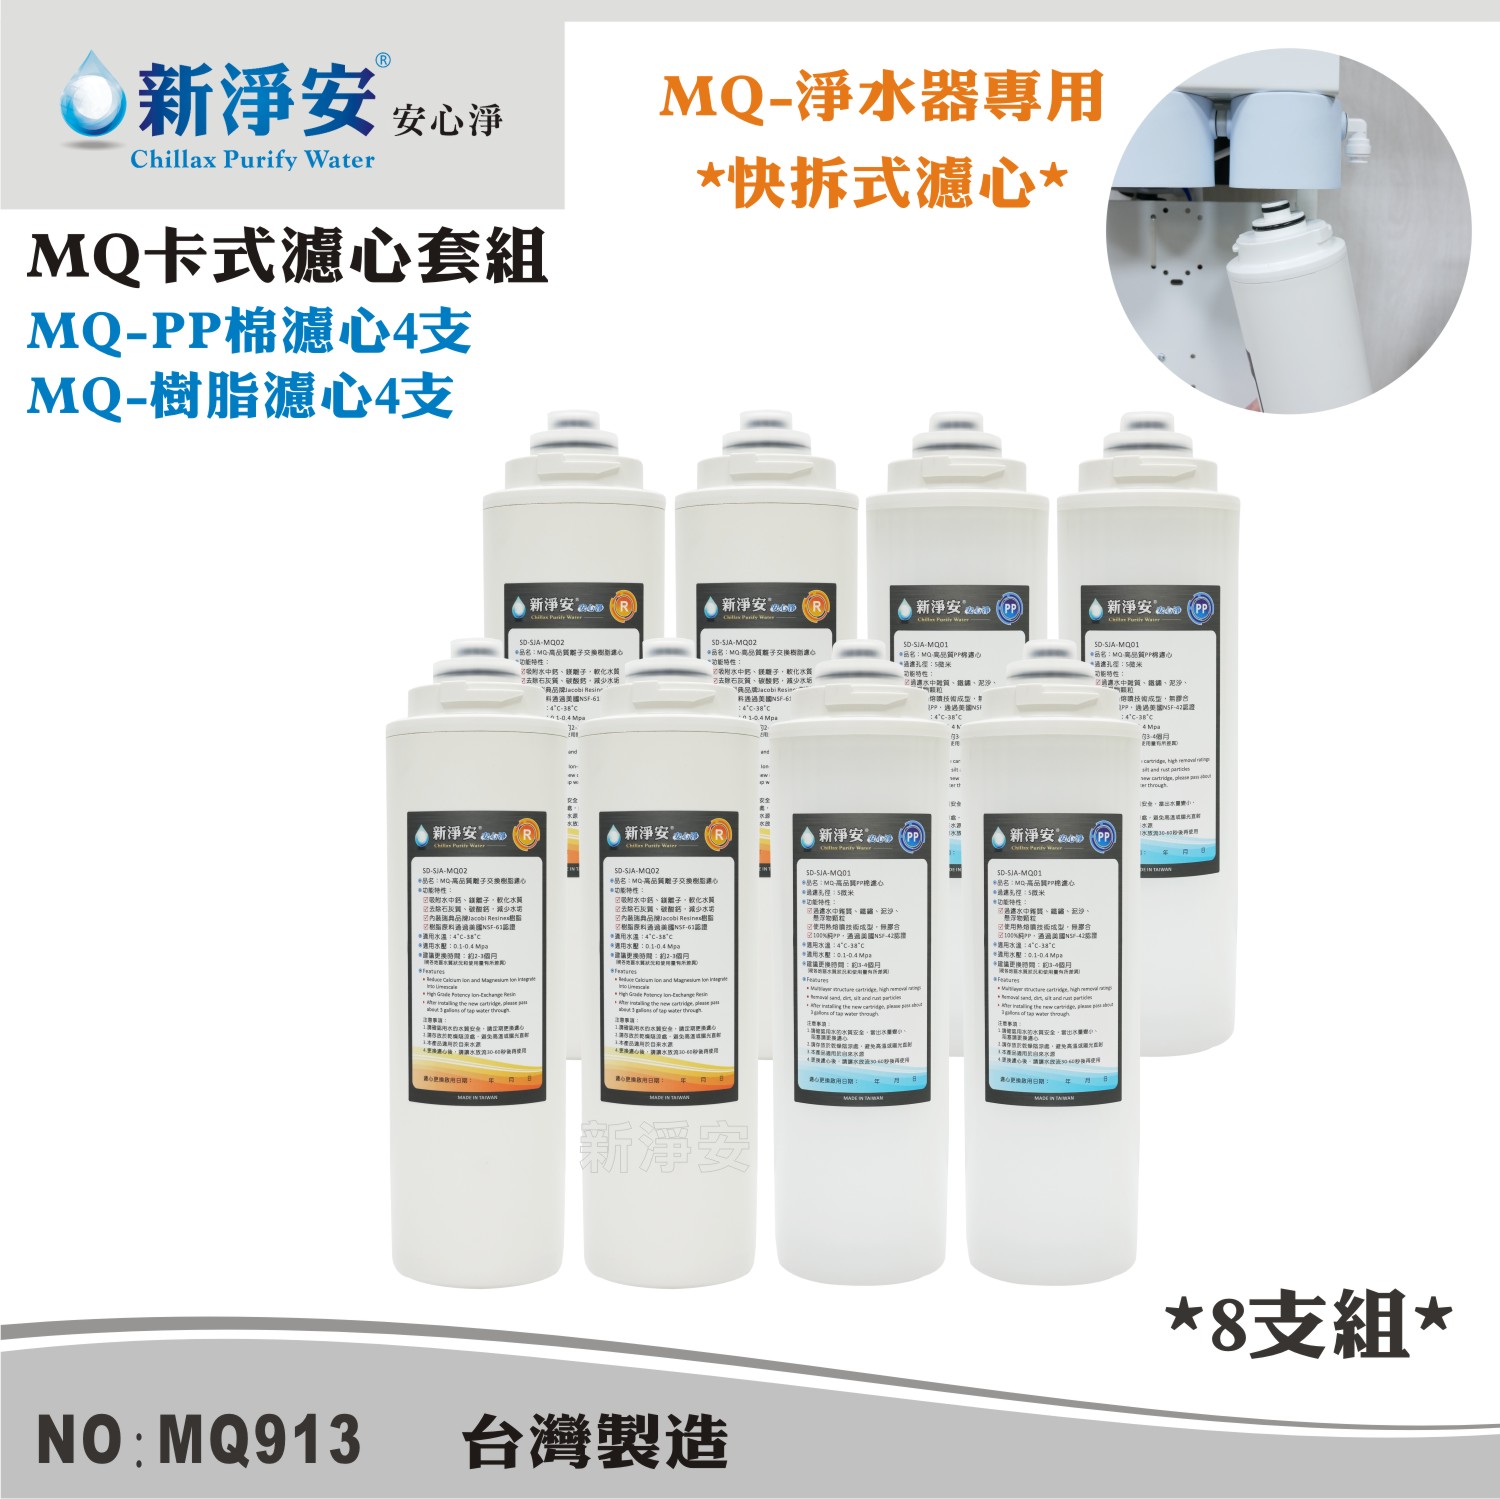 【新裕生活館】MQ快拆式濾心套組-PP棉5微米/軟水樹脂 8支組 除泥沙雜質減少水垢(MQ913)